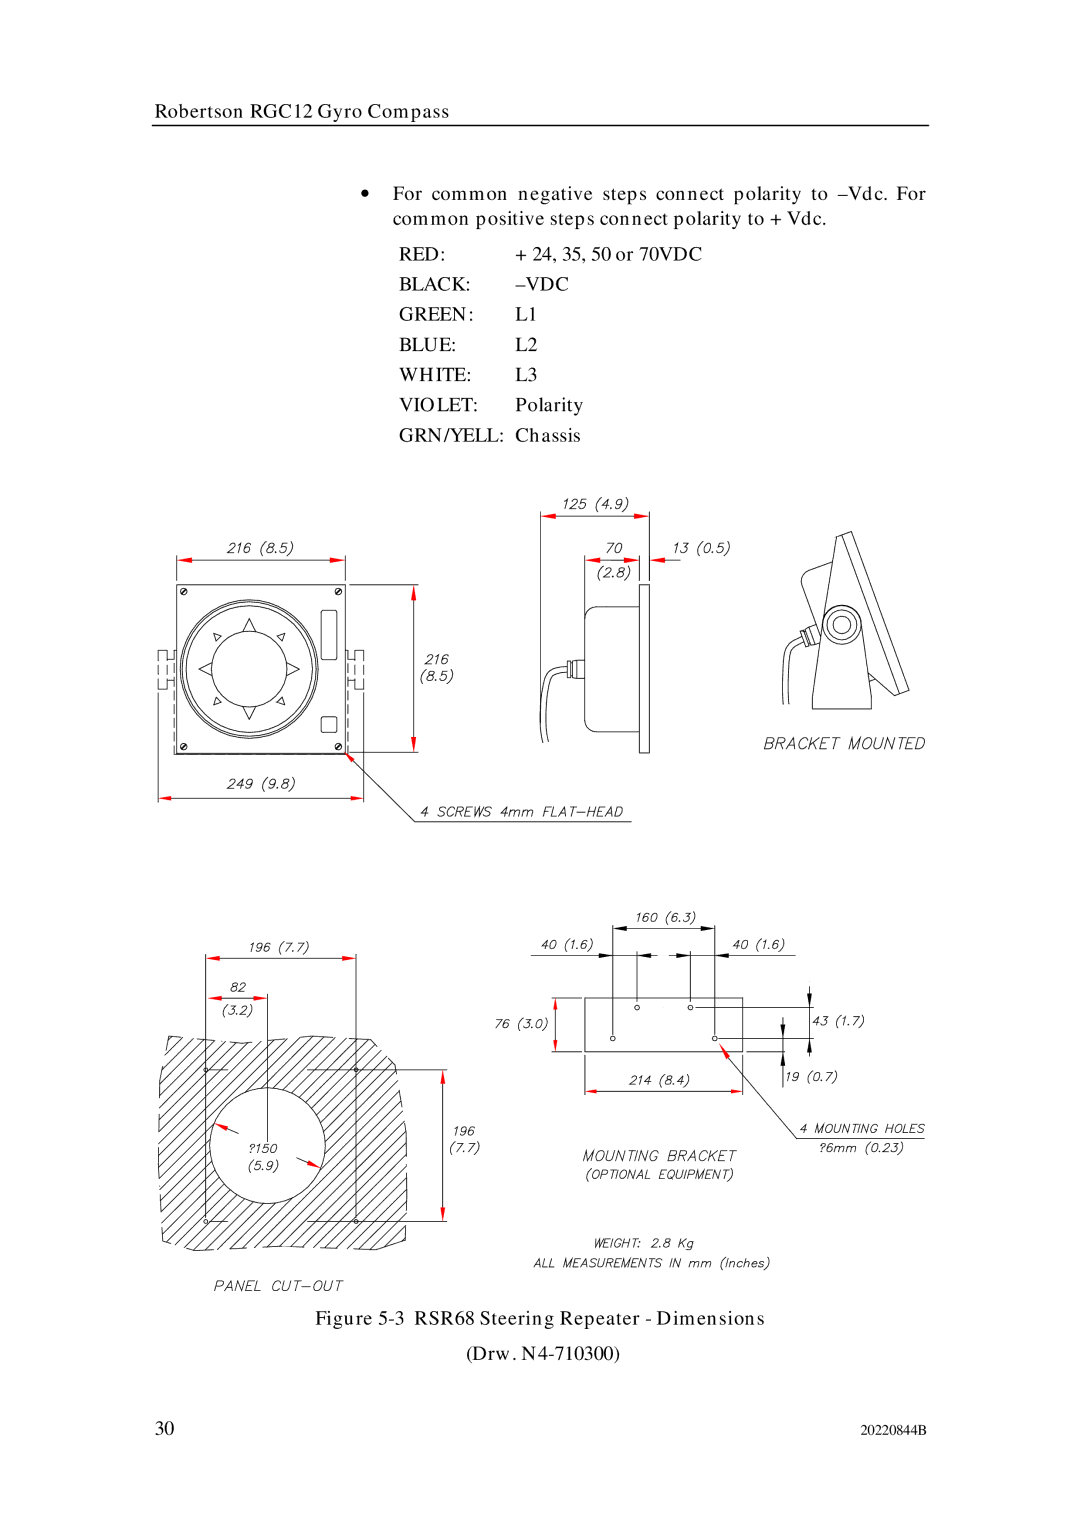 Simrad RGC12 manual RSR68 Steering Repeater Dimensions 